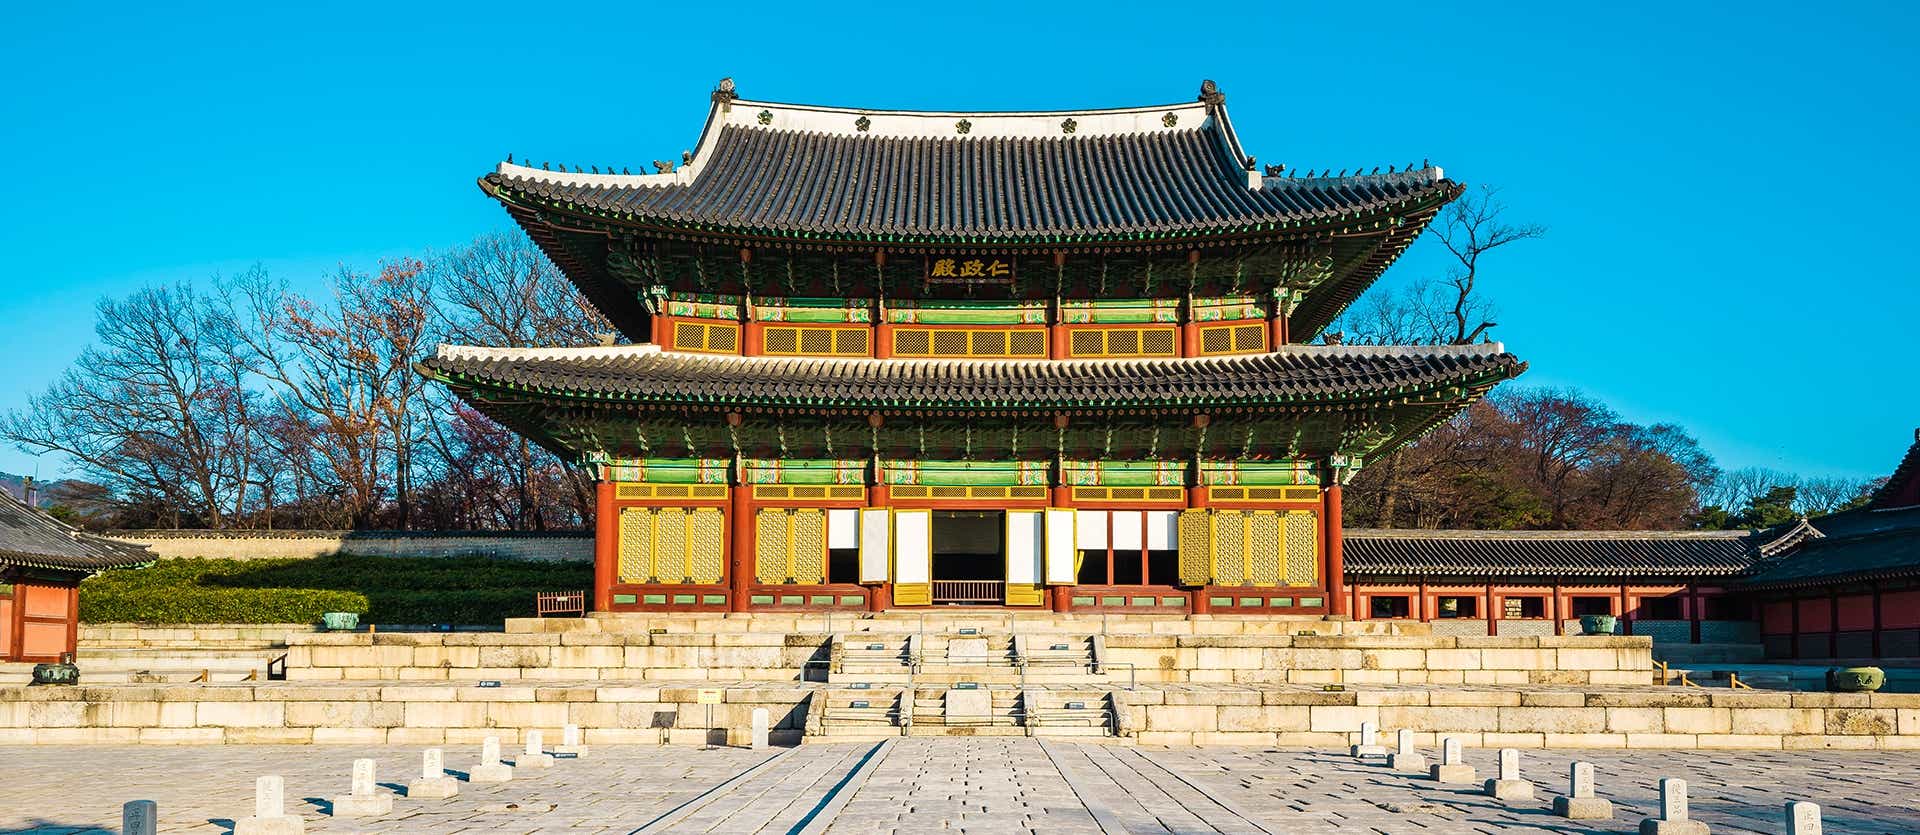 Palacio Changdeokgung <span class="iconos separador"></span> Seúl <span class="iconos separador"></span> Corea del Sur